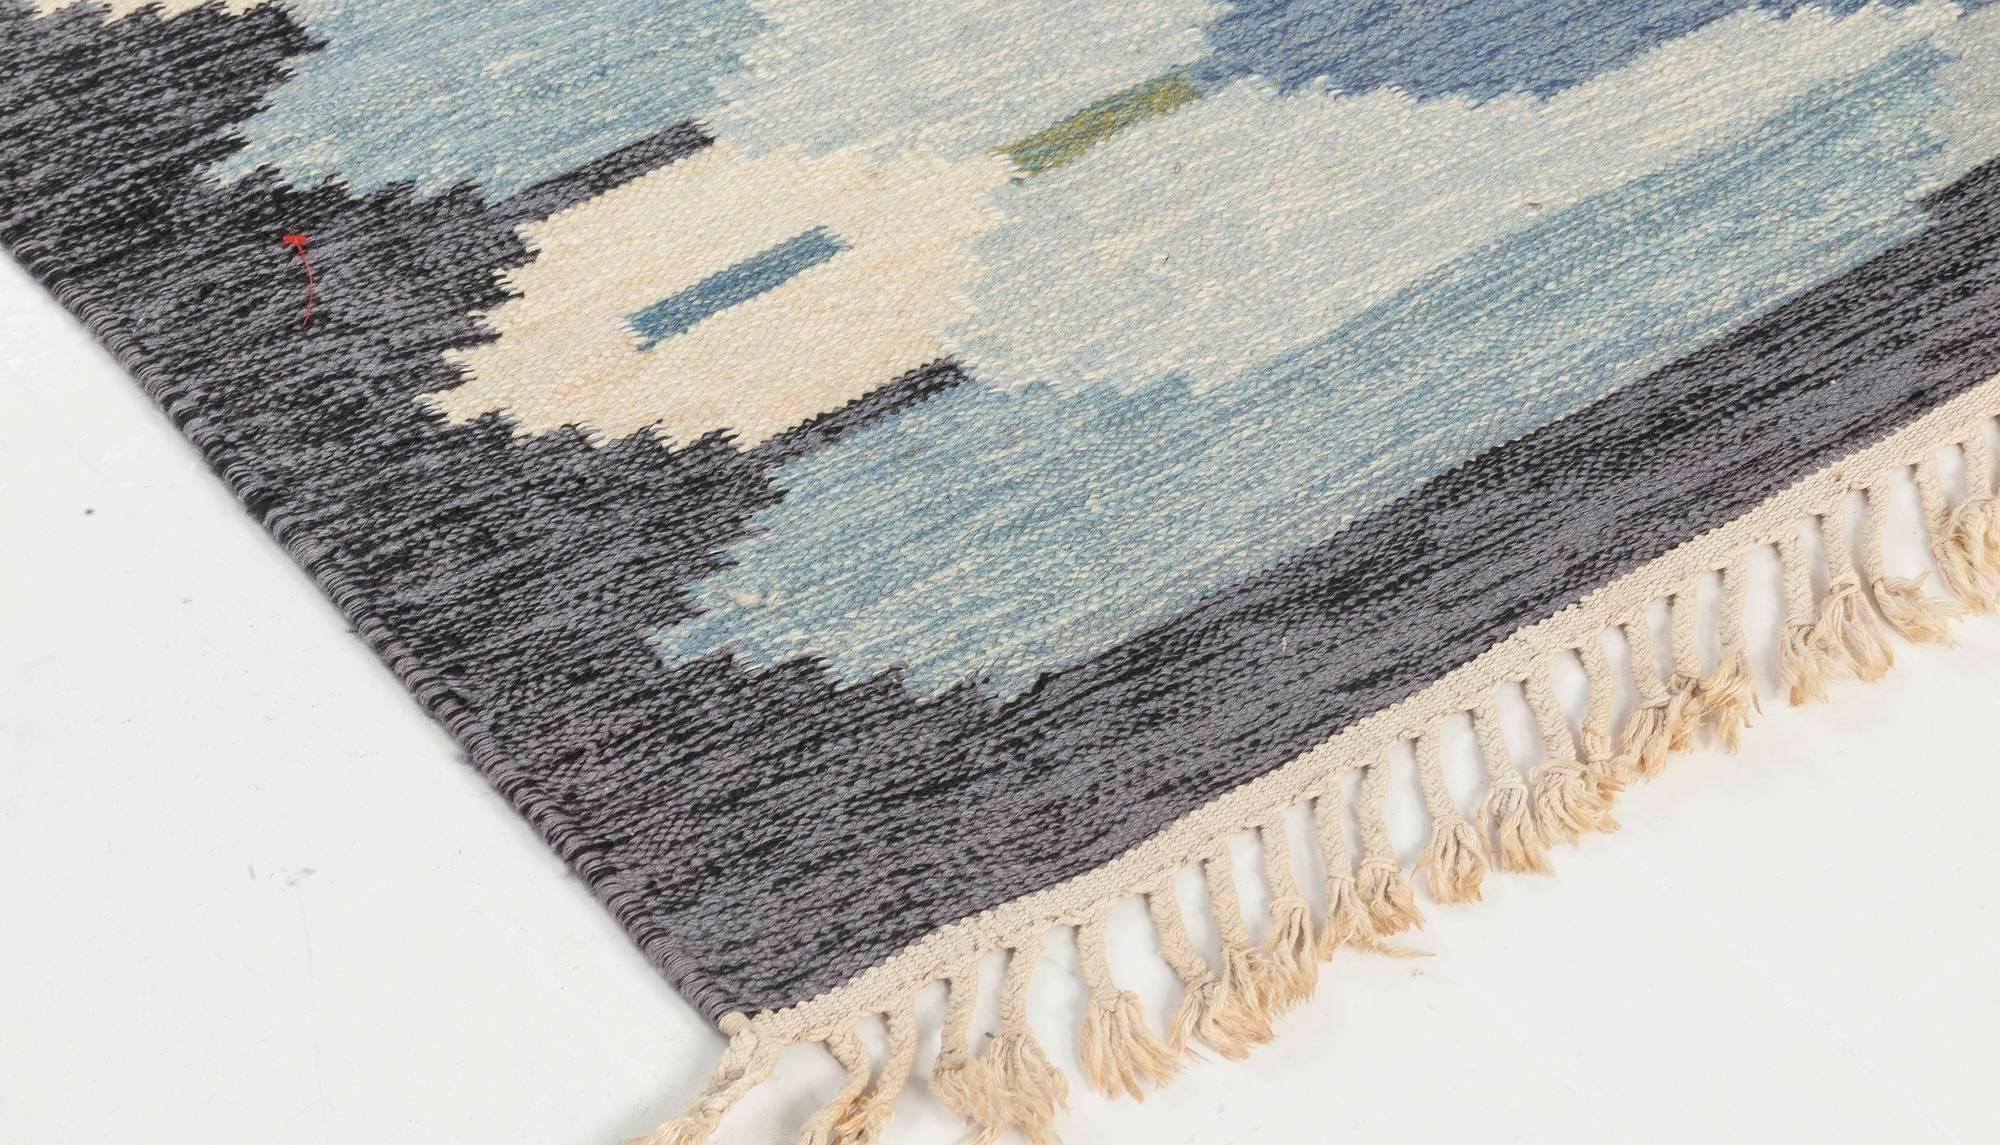 Midcentury Swedish Blue Flat-weave Rug by Ingegerd Silow at Doris Leslie Blau 1